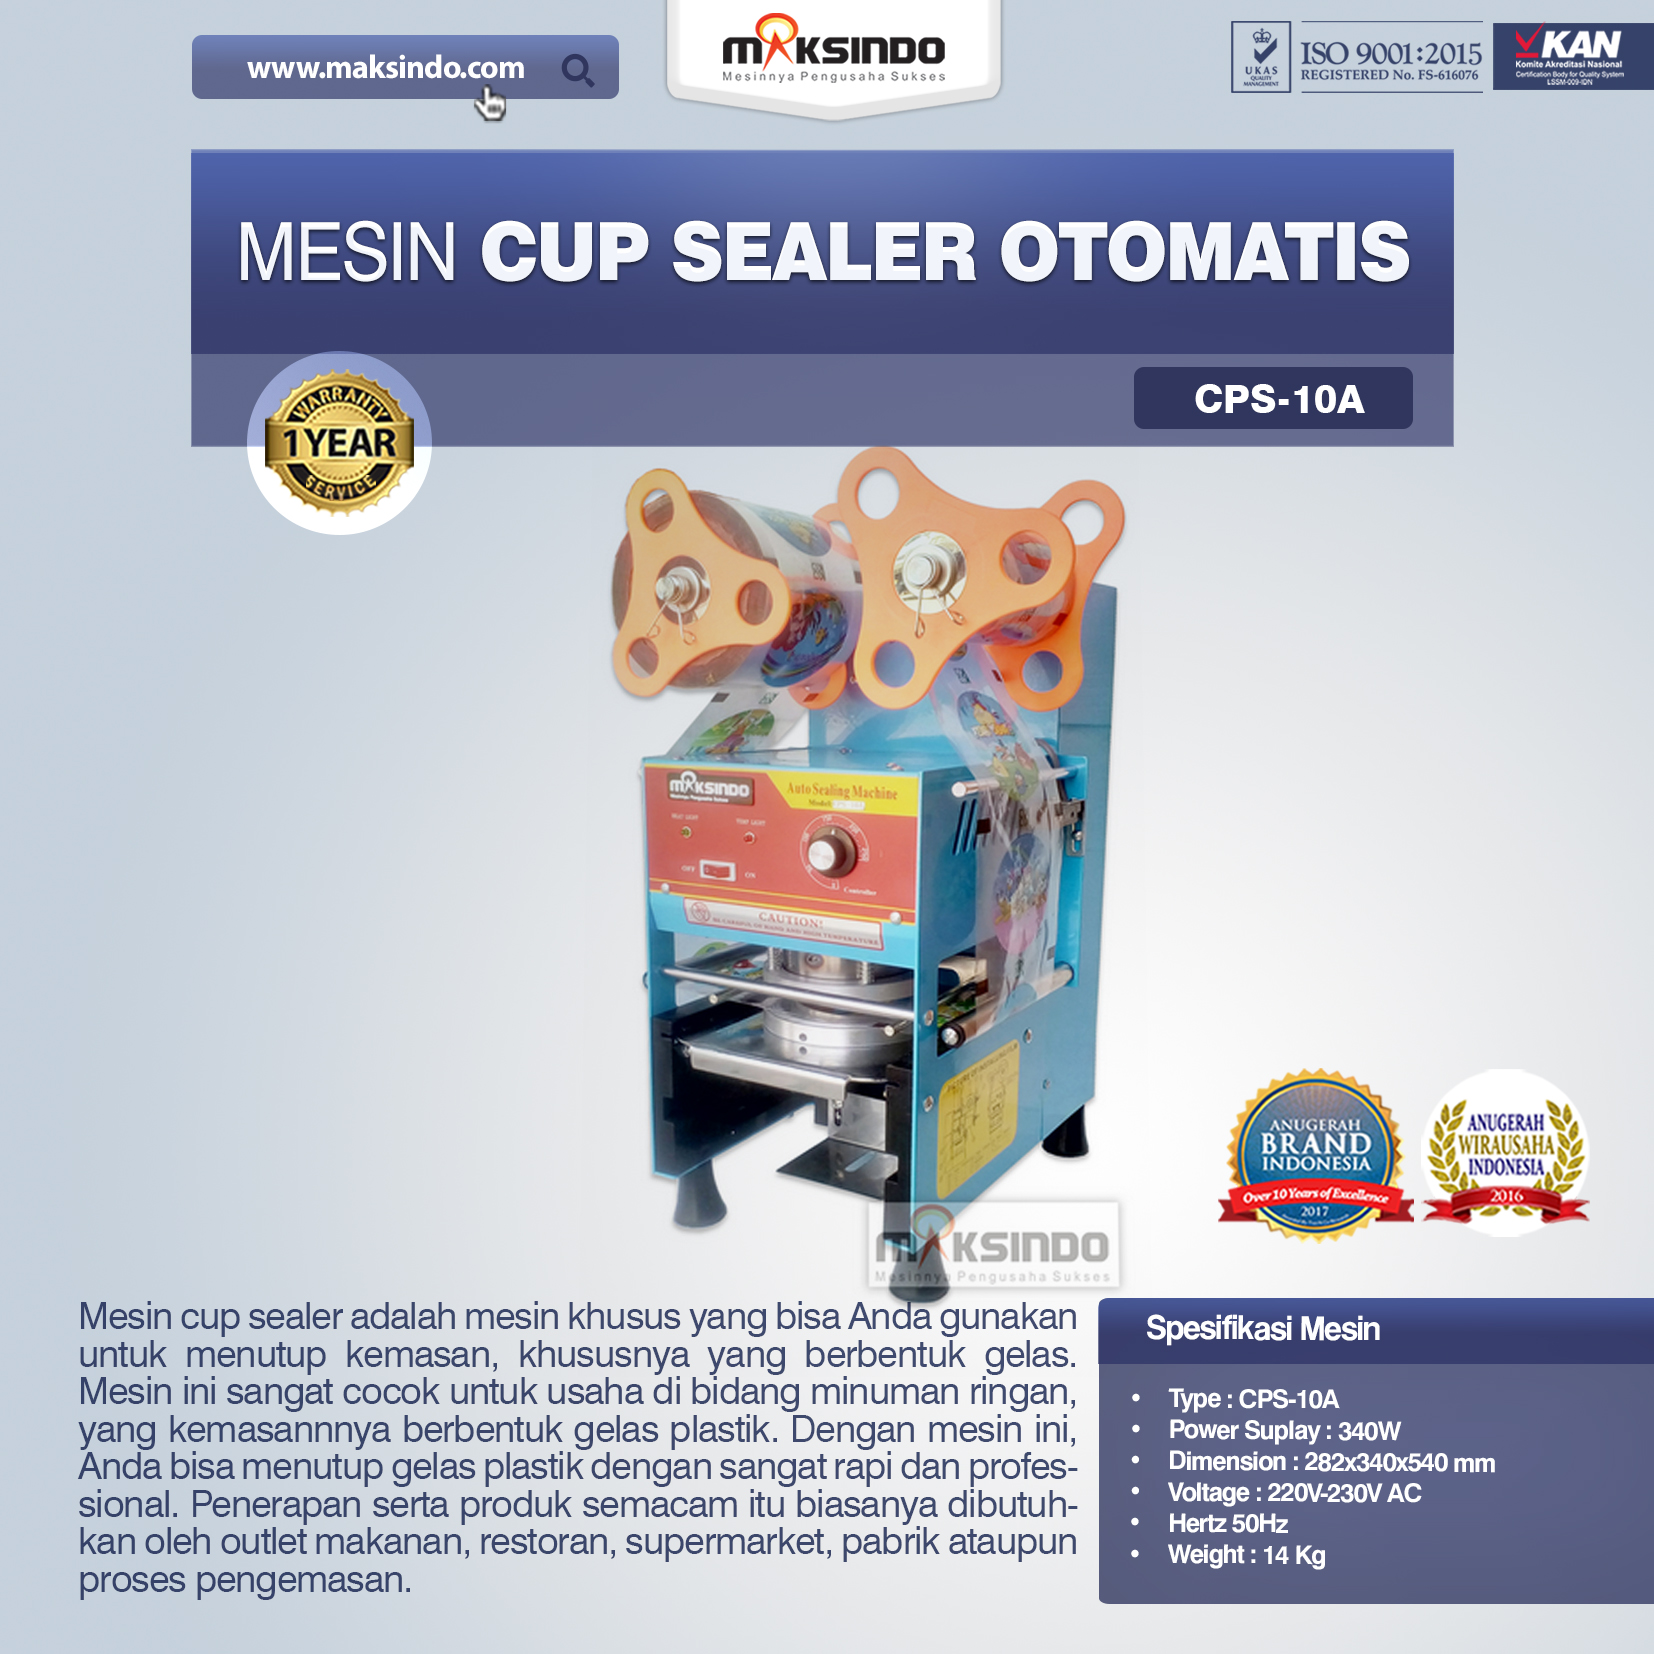 Jual Mesin Cup Sealer Otomatis (CPS-10A) di Semarang